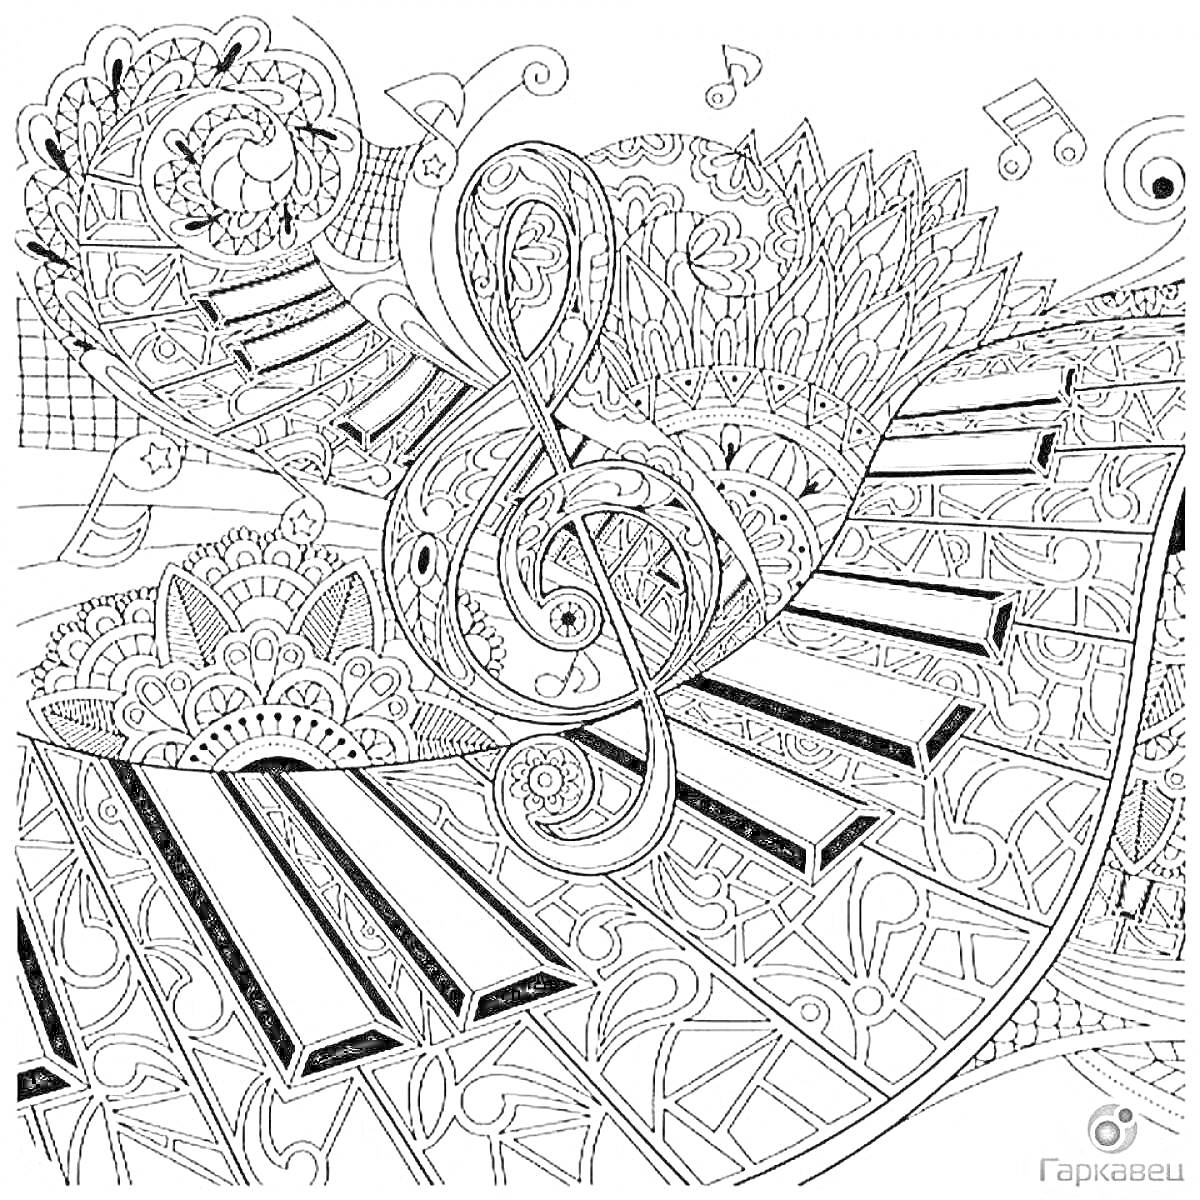 Музыкальная антистресс раскраска с клавишами пианино, скрипичным ключом и нотами среди узорчатых элементов